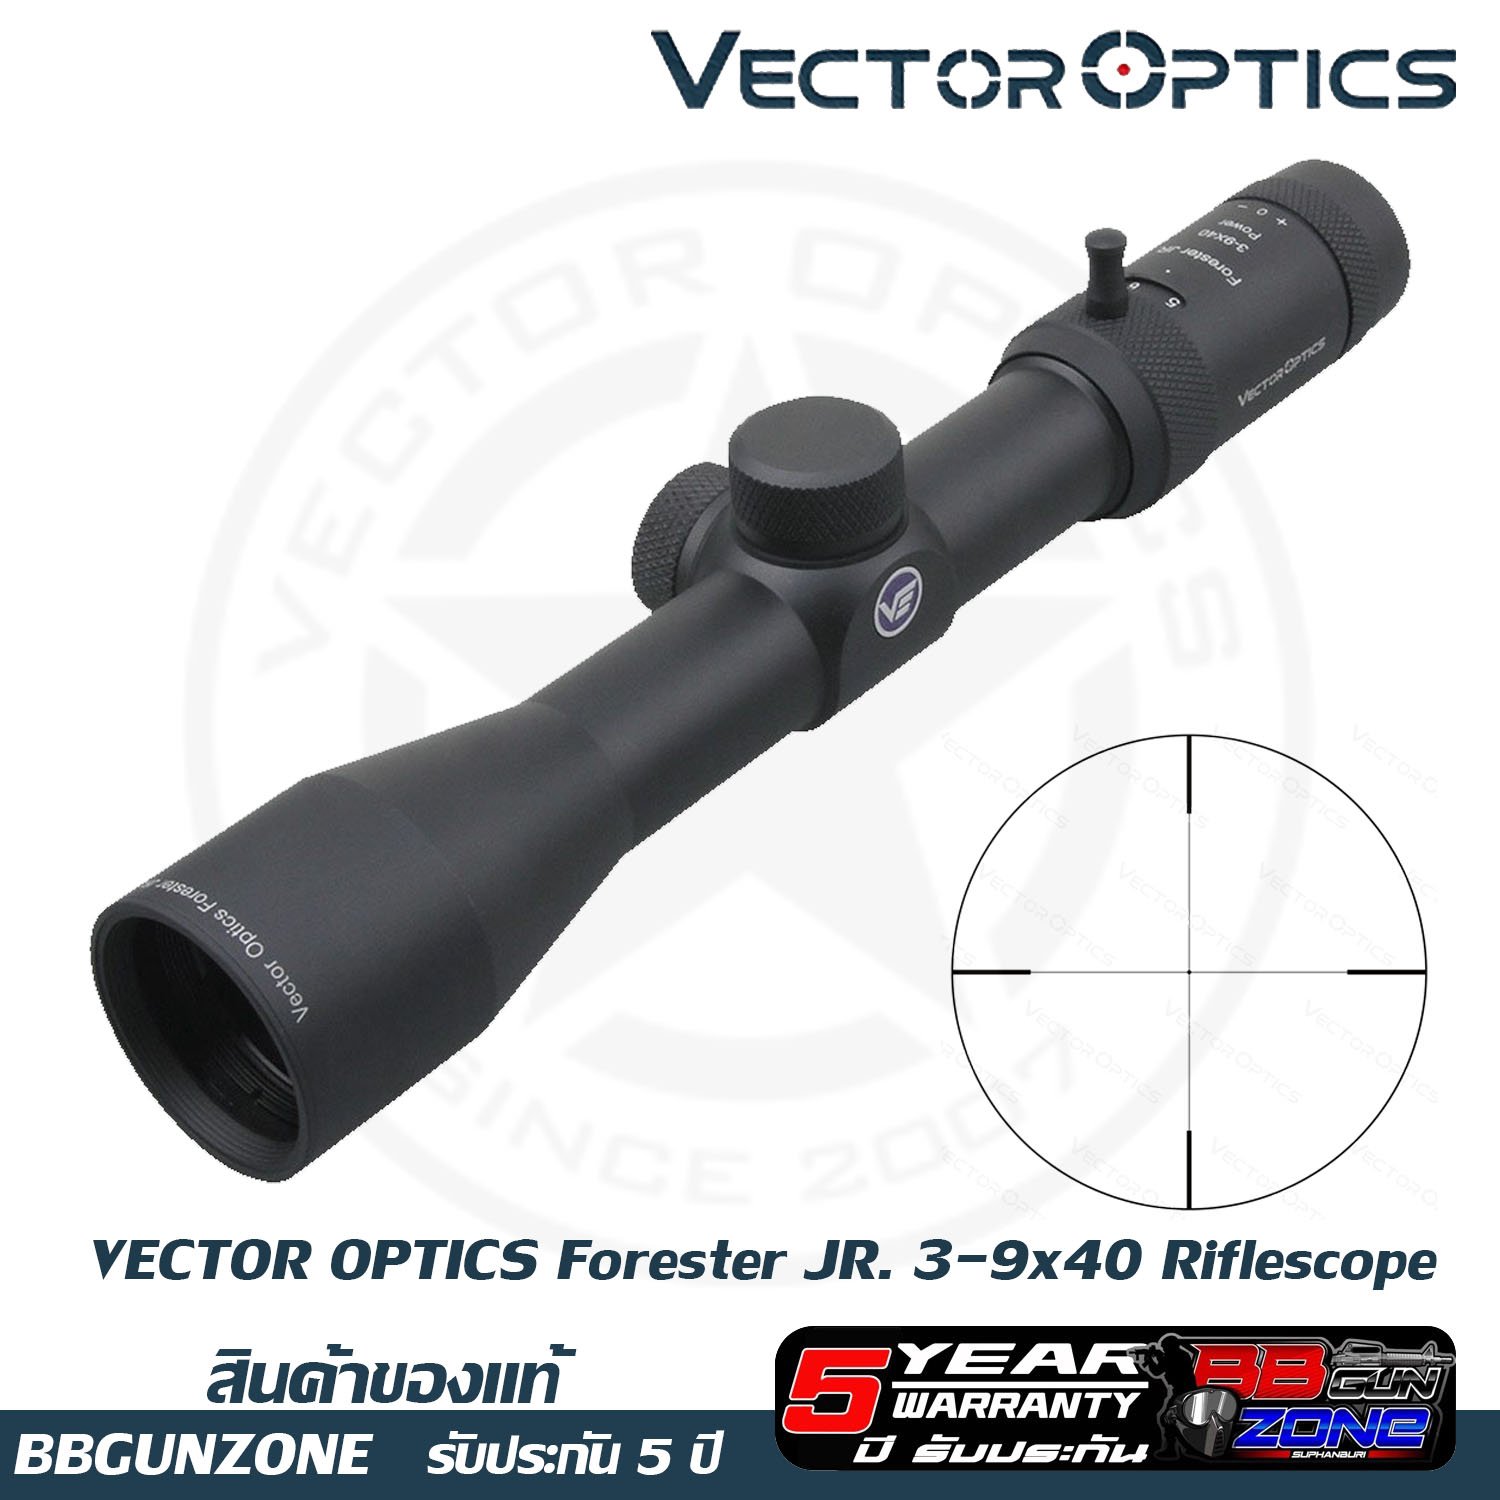 Vector optics Forester JR. 3-9x40 Riflescope - bbgunzone